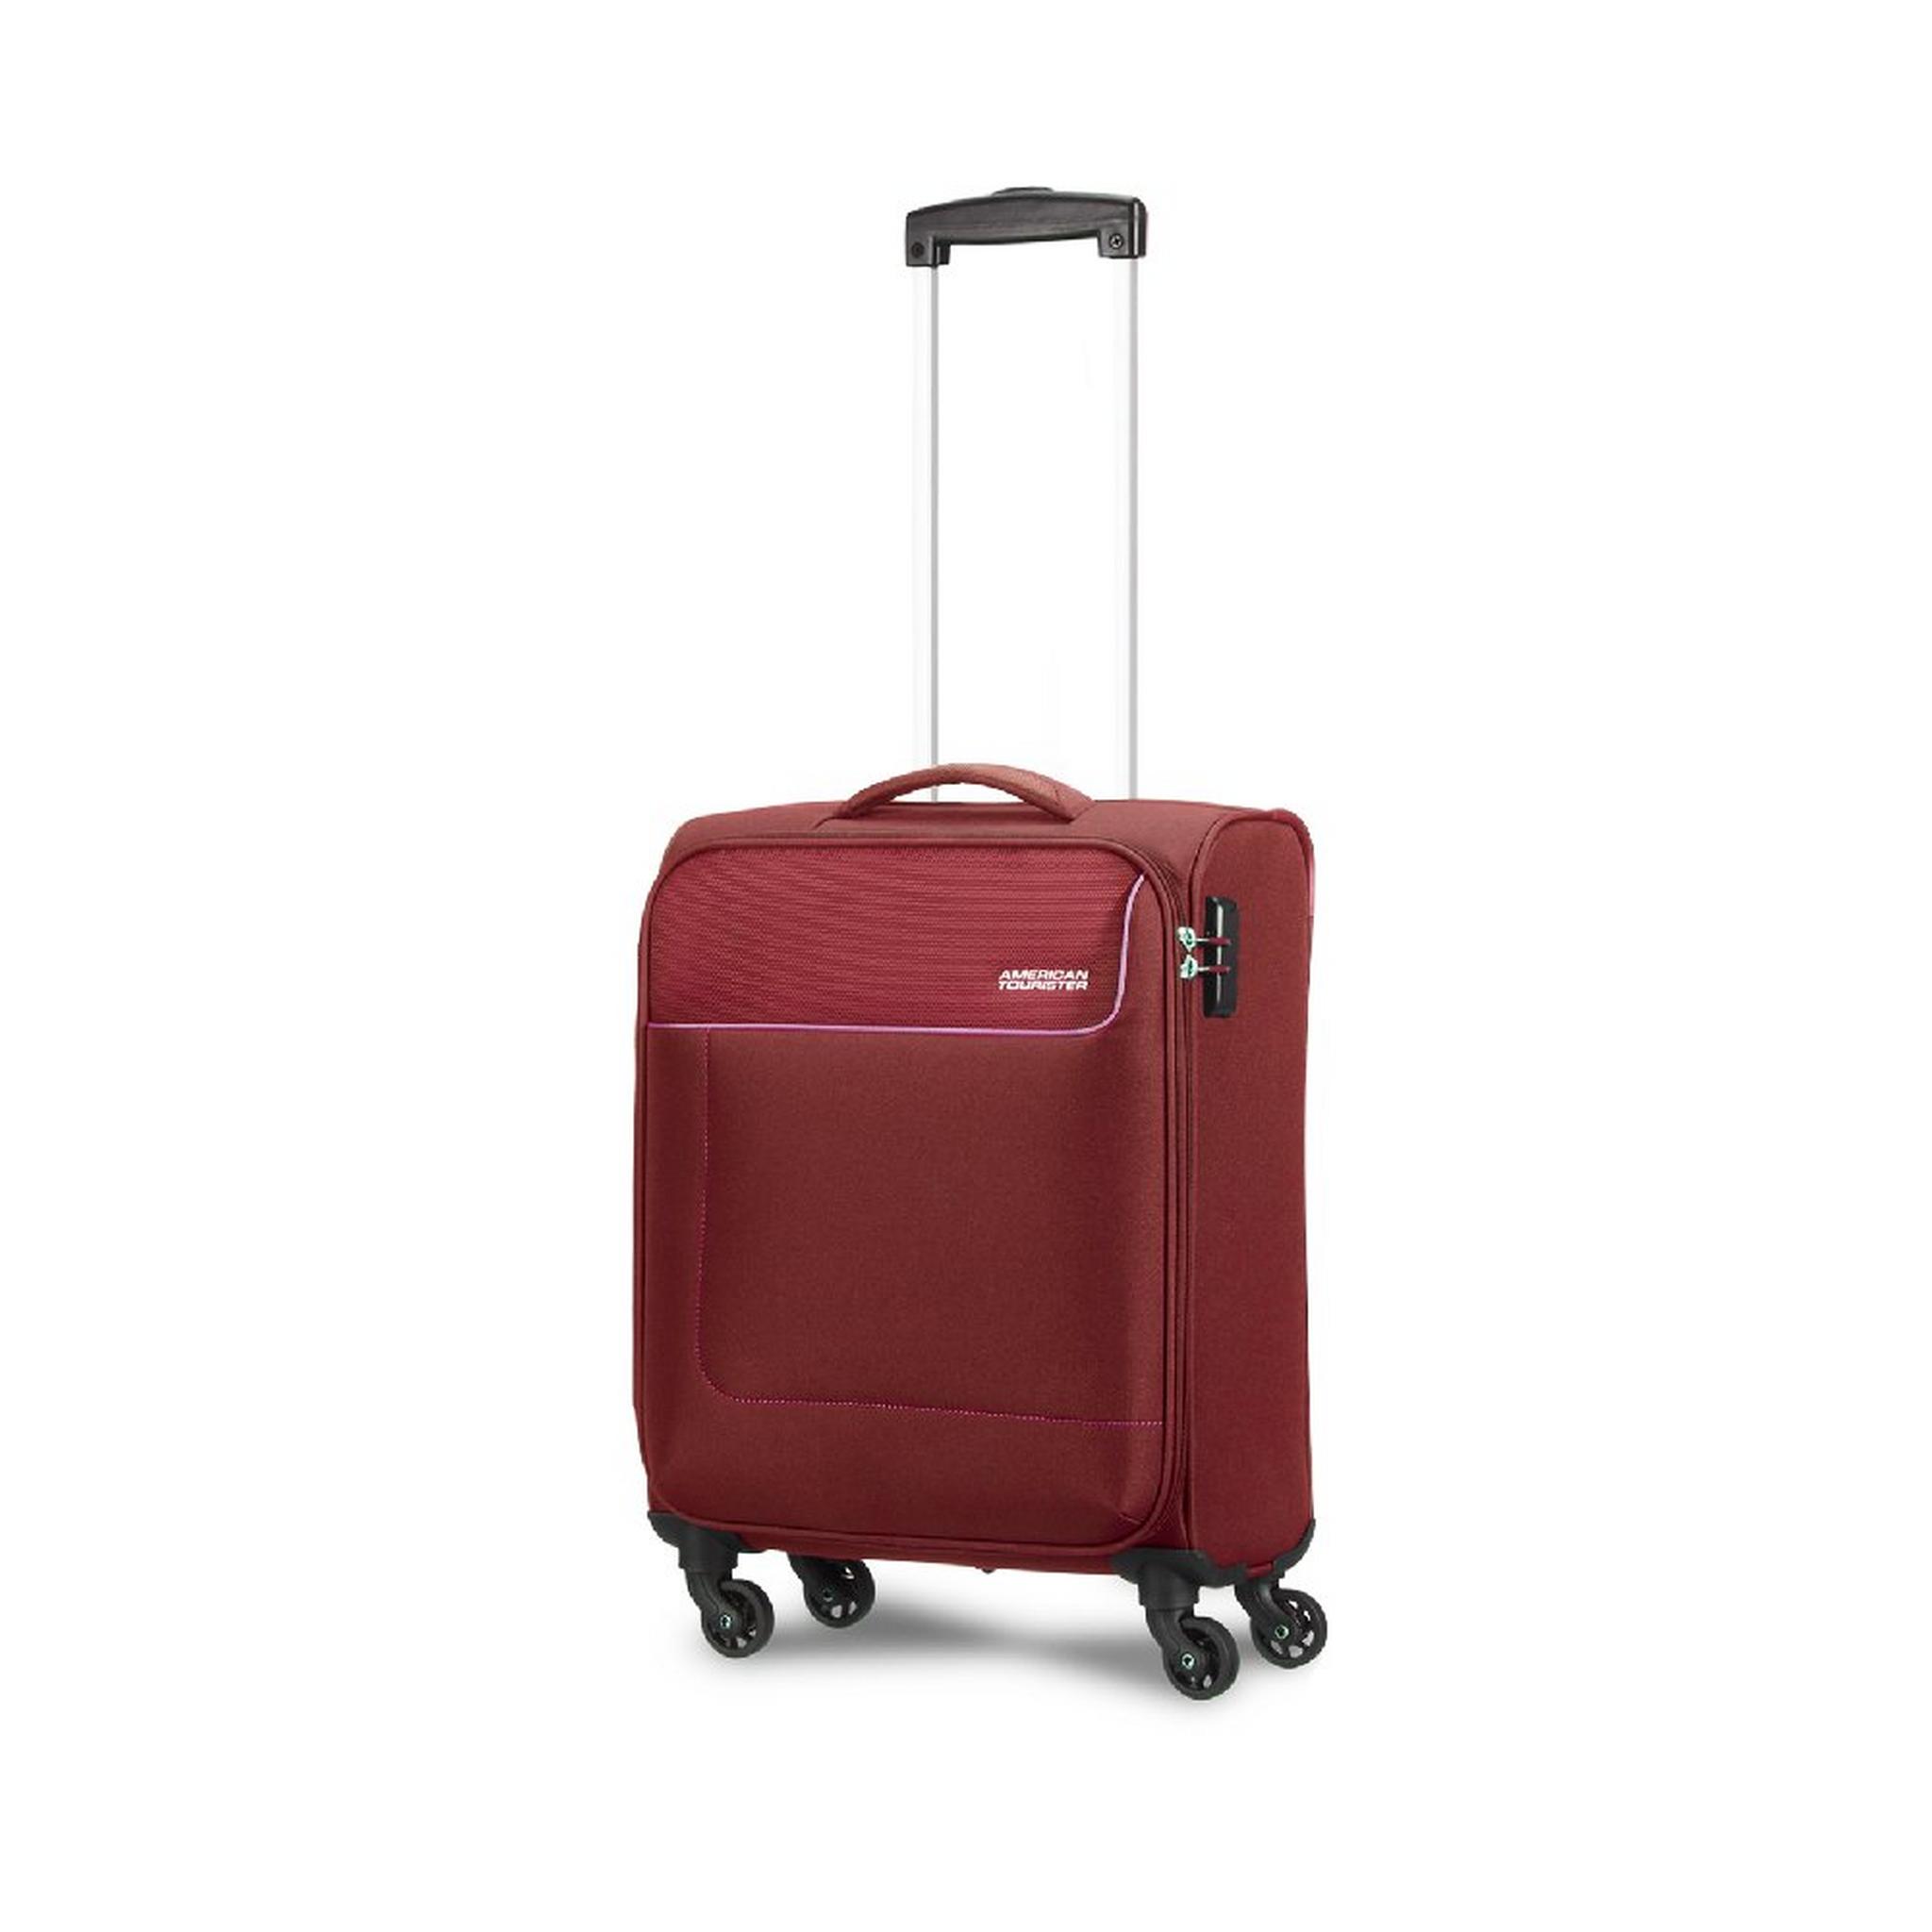 حقيبة سفر جامايكا بجوانب ناعمة وعجلات دوارة 58سم من أمريكان توريستر، 27OX02001- أحمر مارون